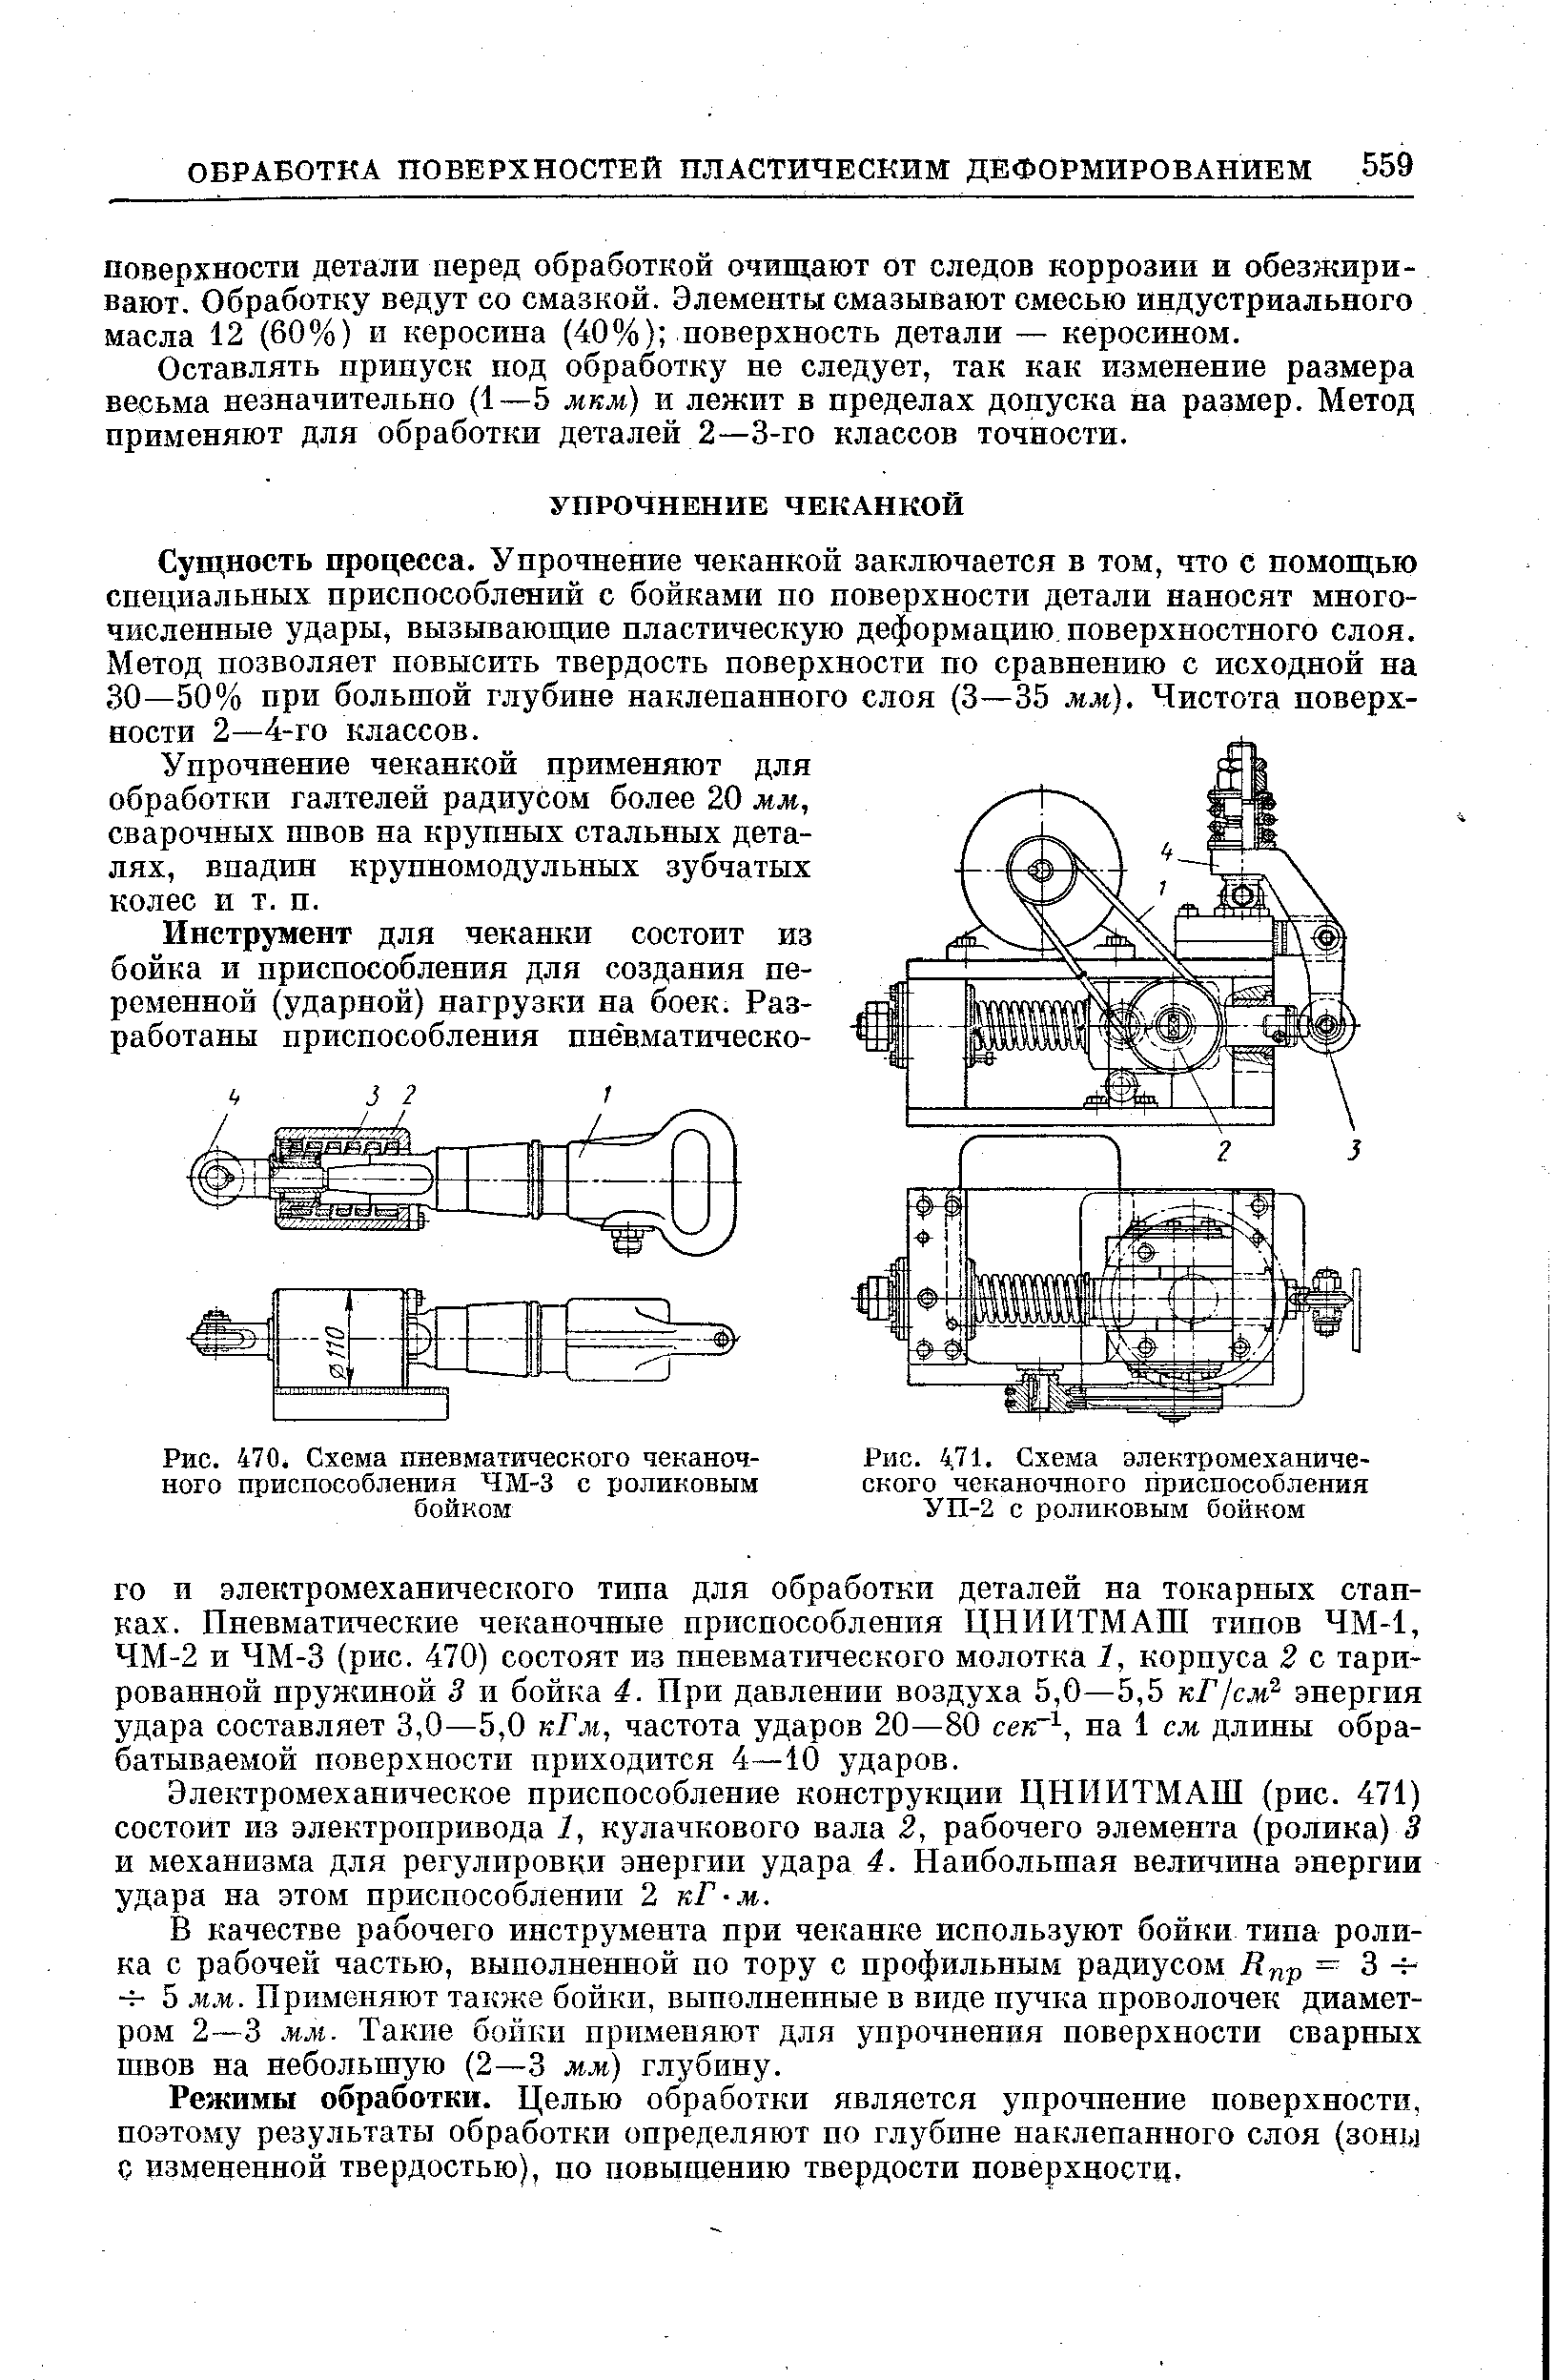 Рис. 470. Схема пневматического чеканочного приспособления ЧМ-3 с роликовым бойком
